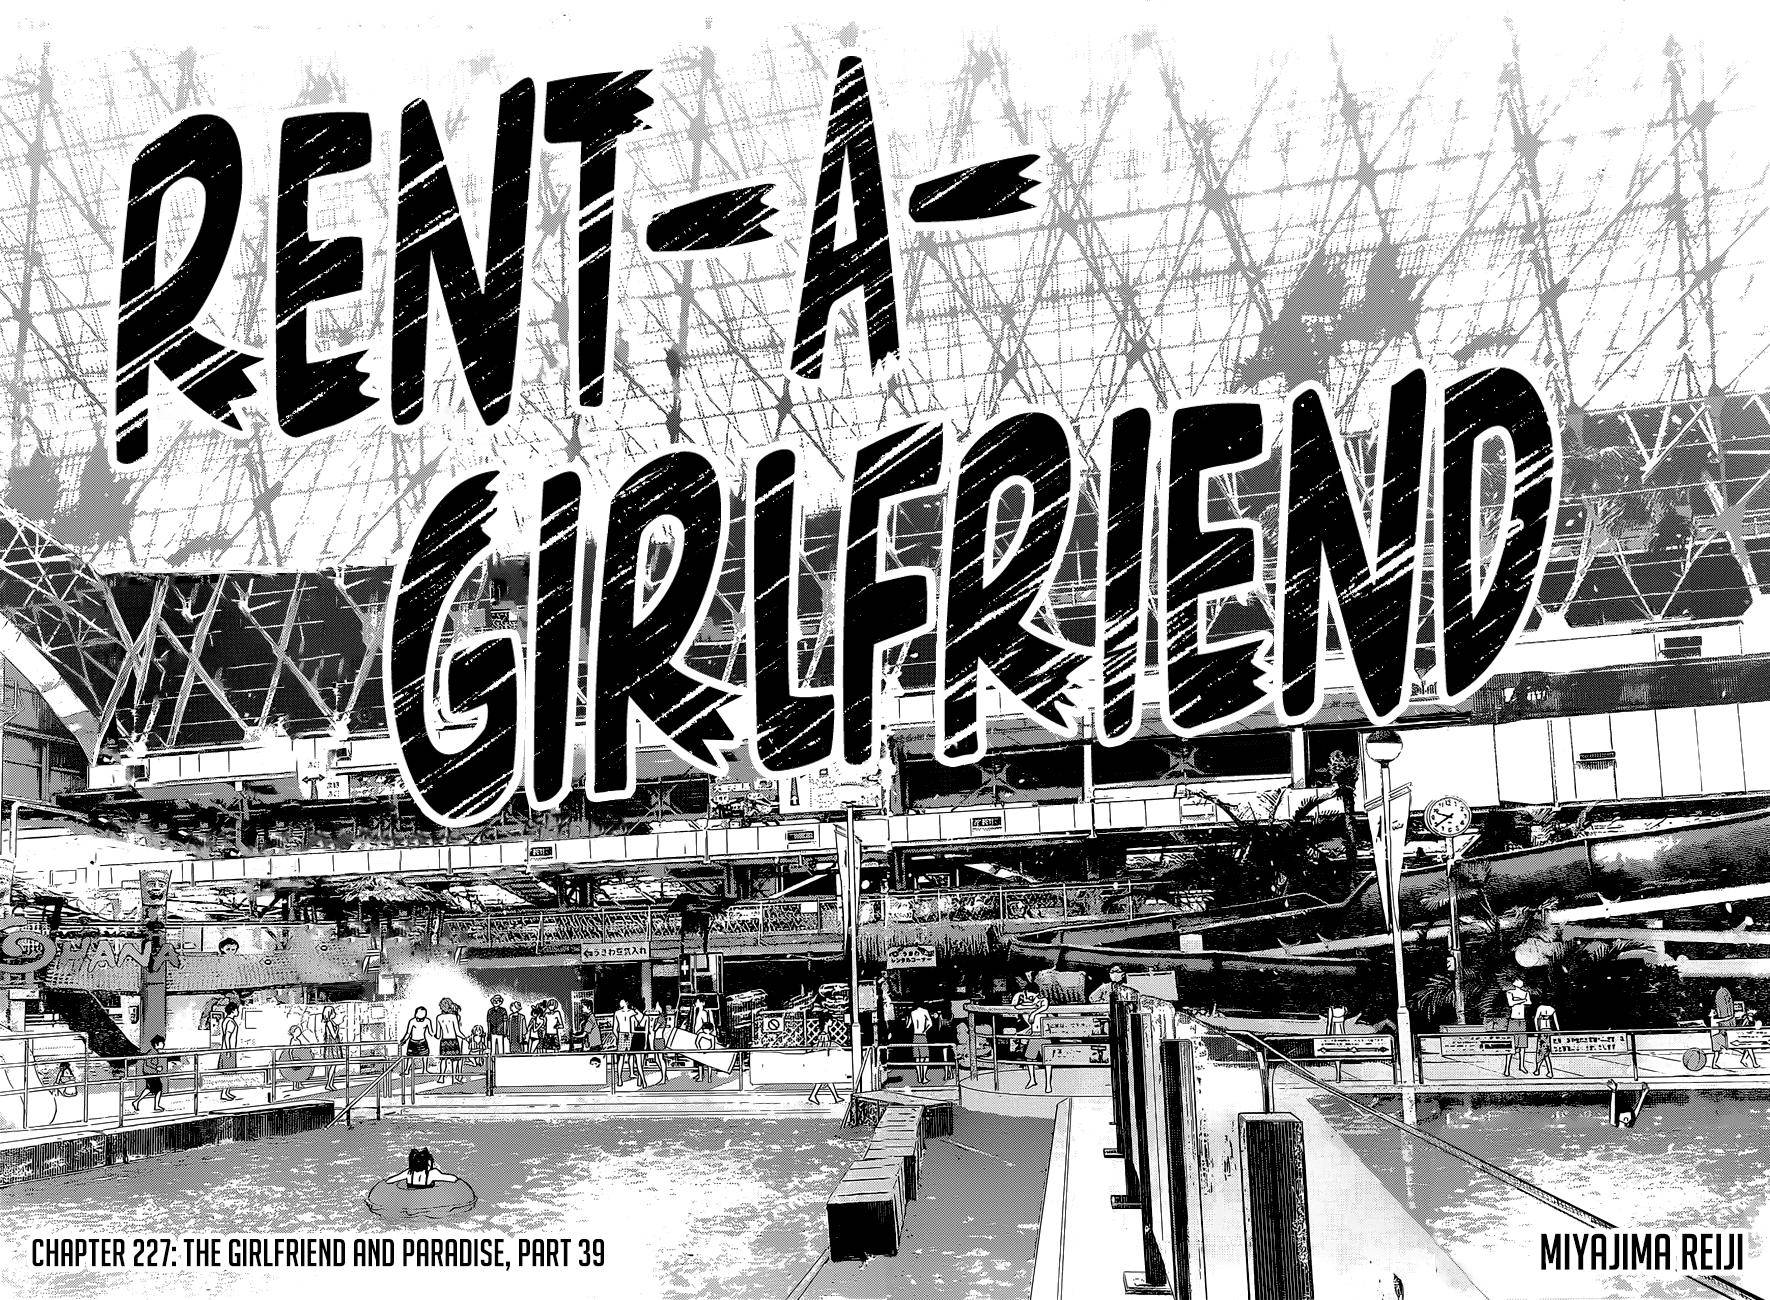 Rent a Girlfriend, chapter 227